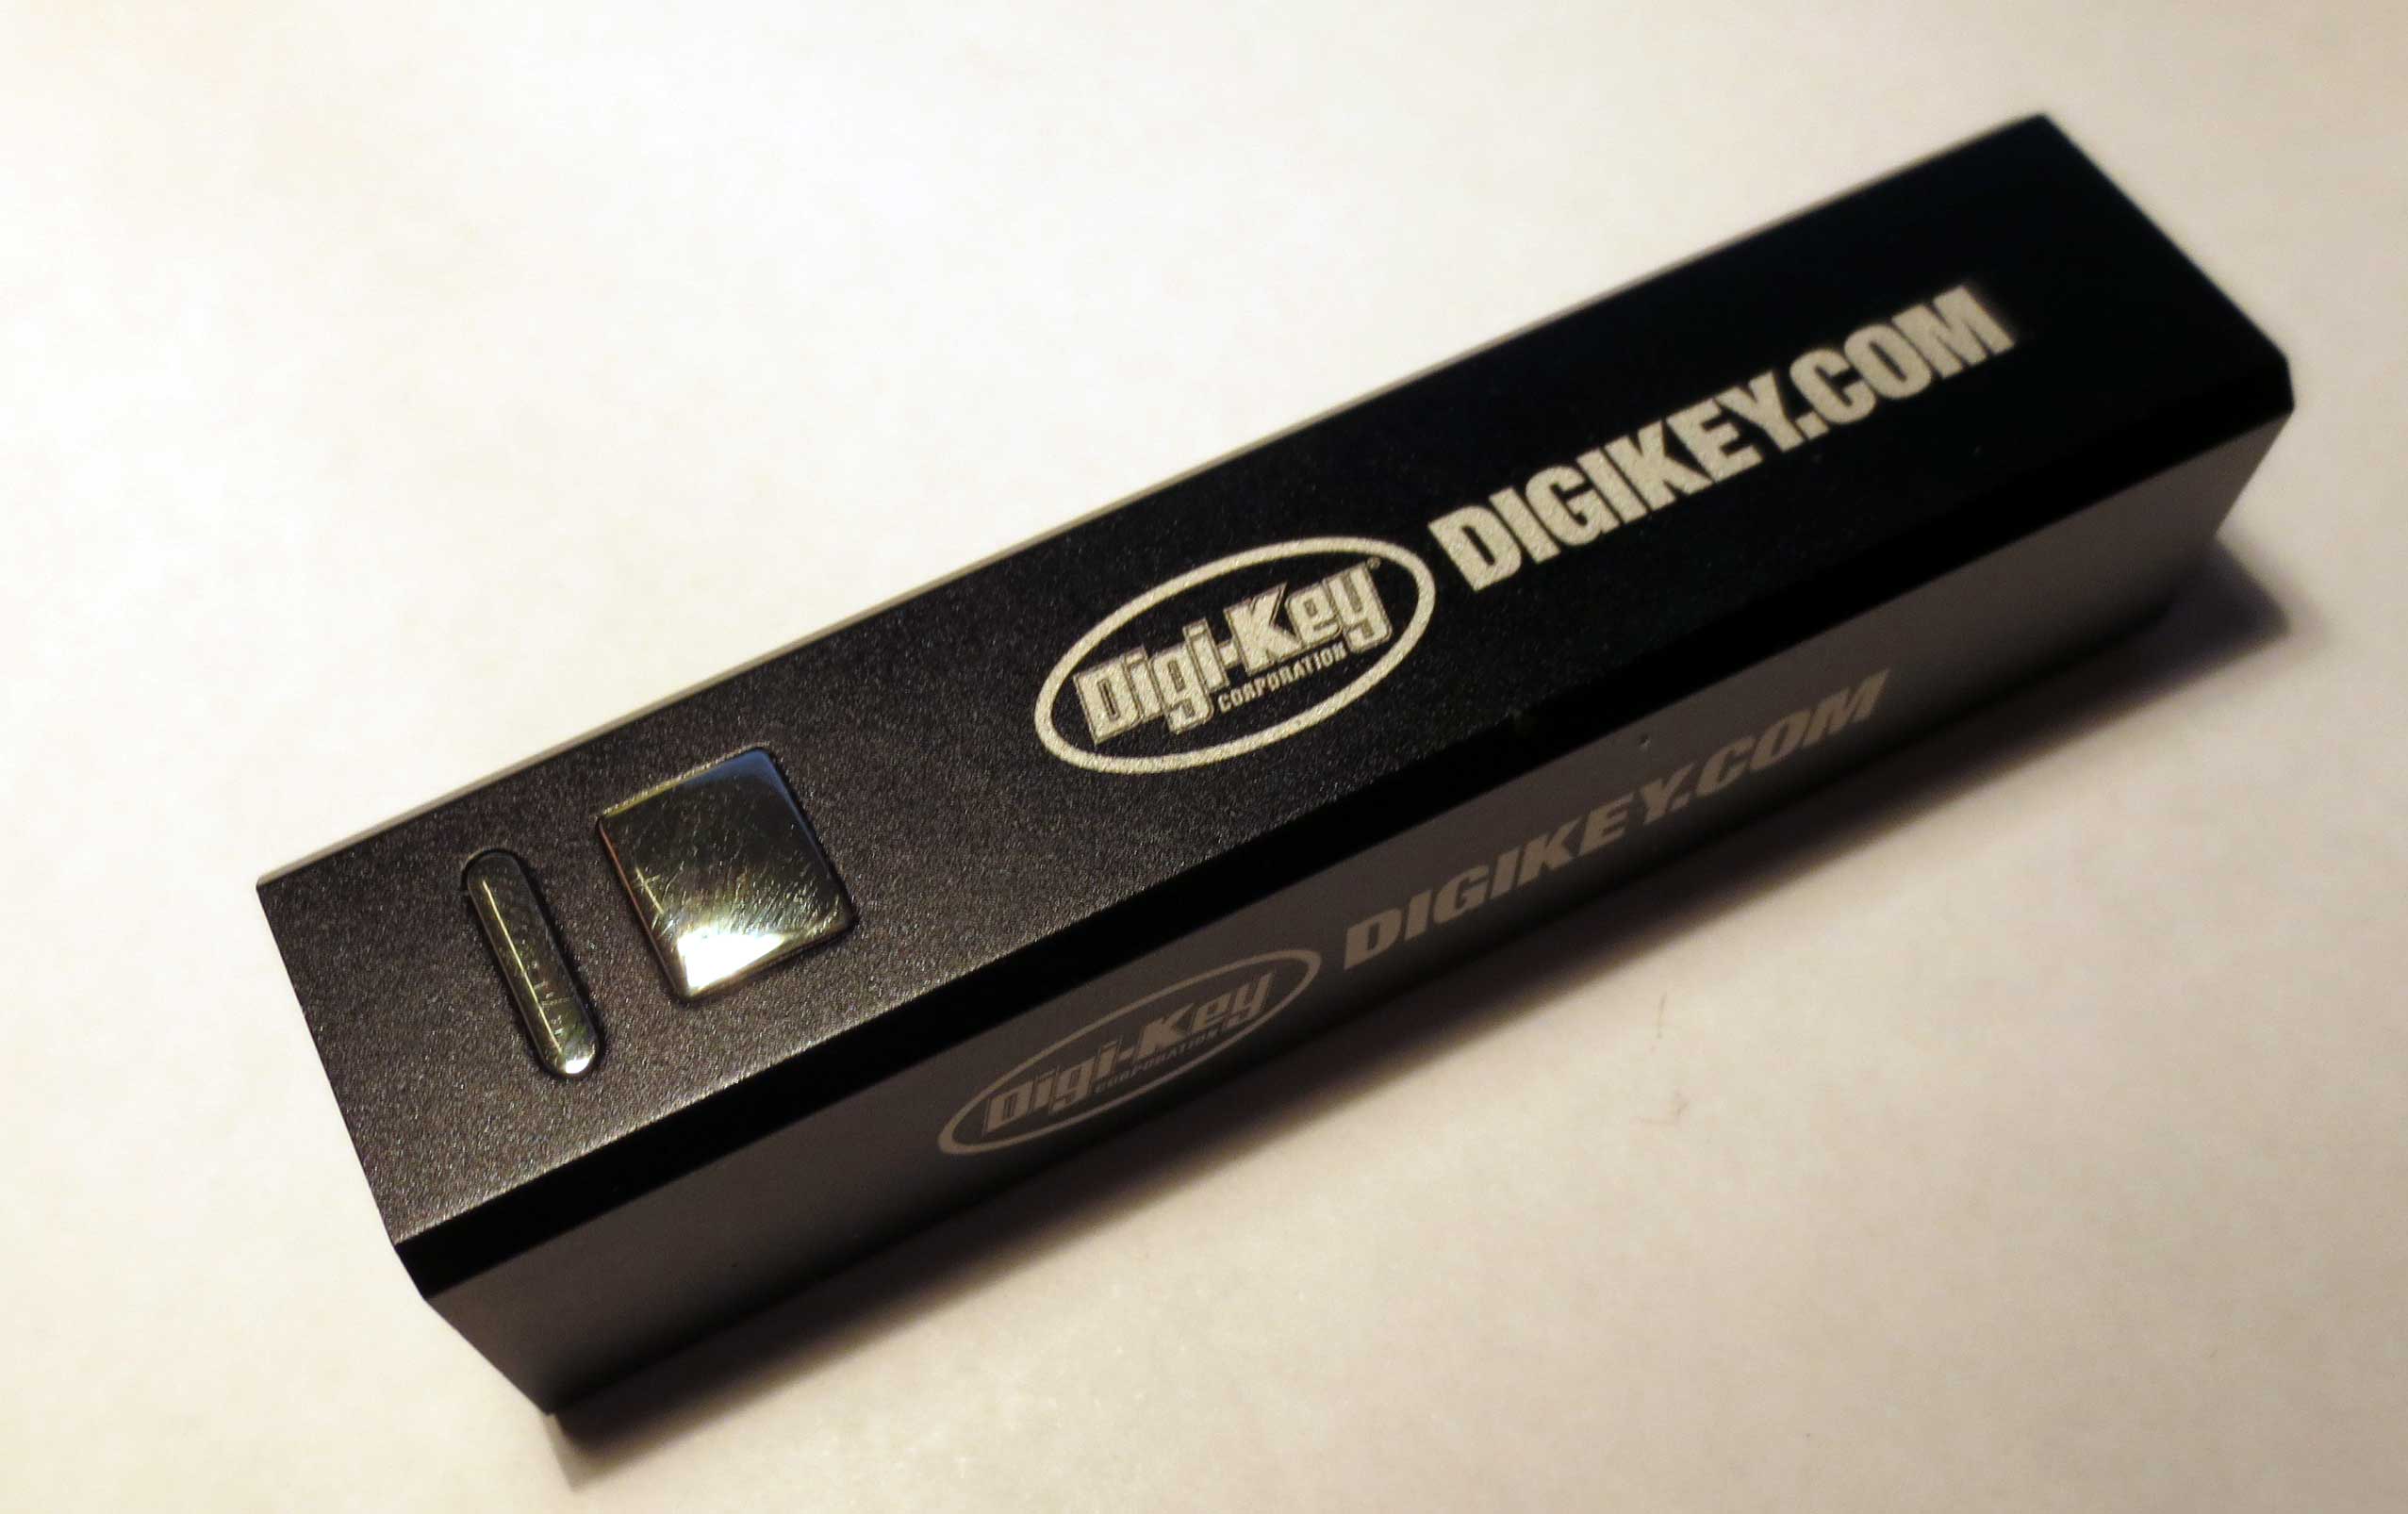 Tearing Down A Cheap External USB Battery | Hackaday